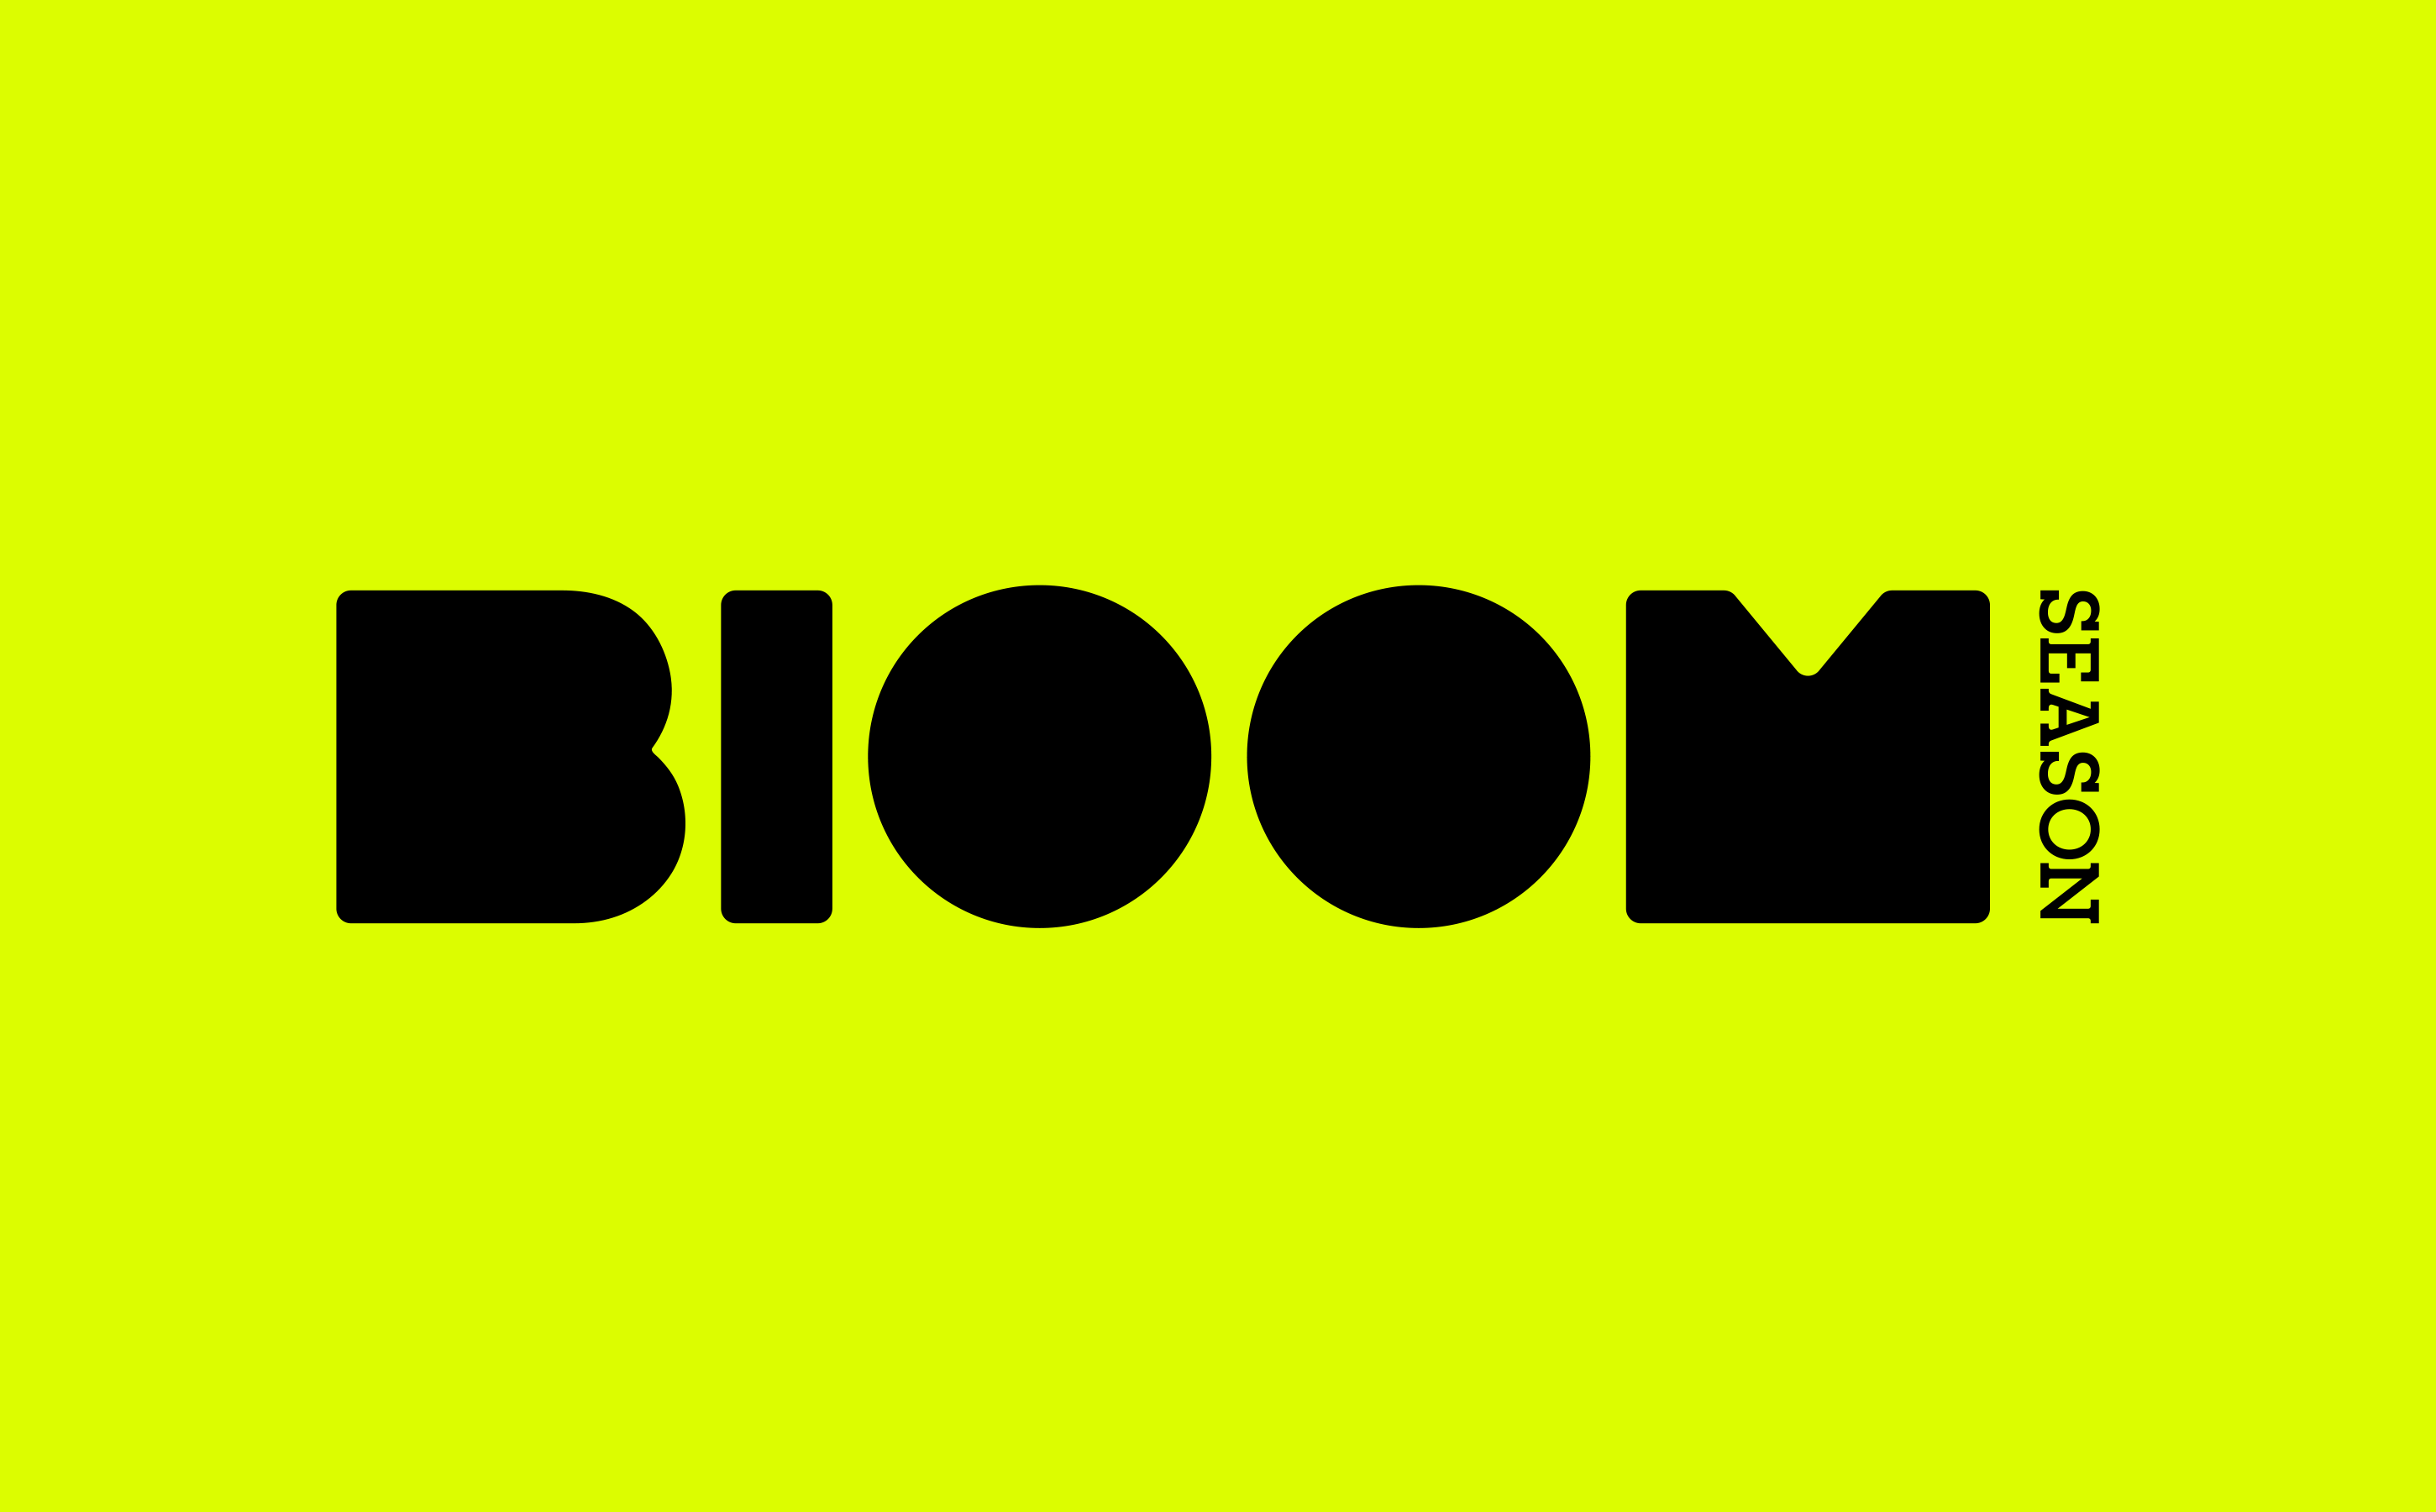 BloomSeason-Branding-1